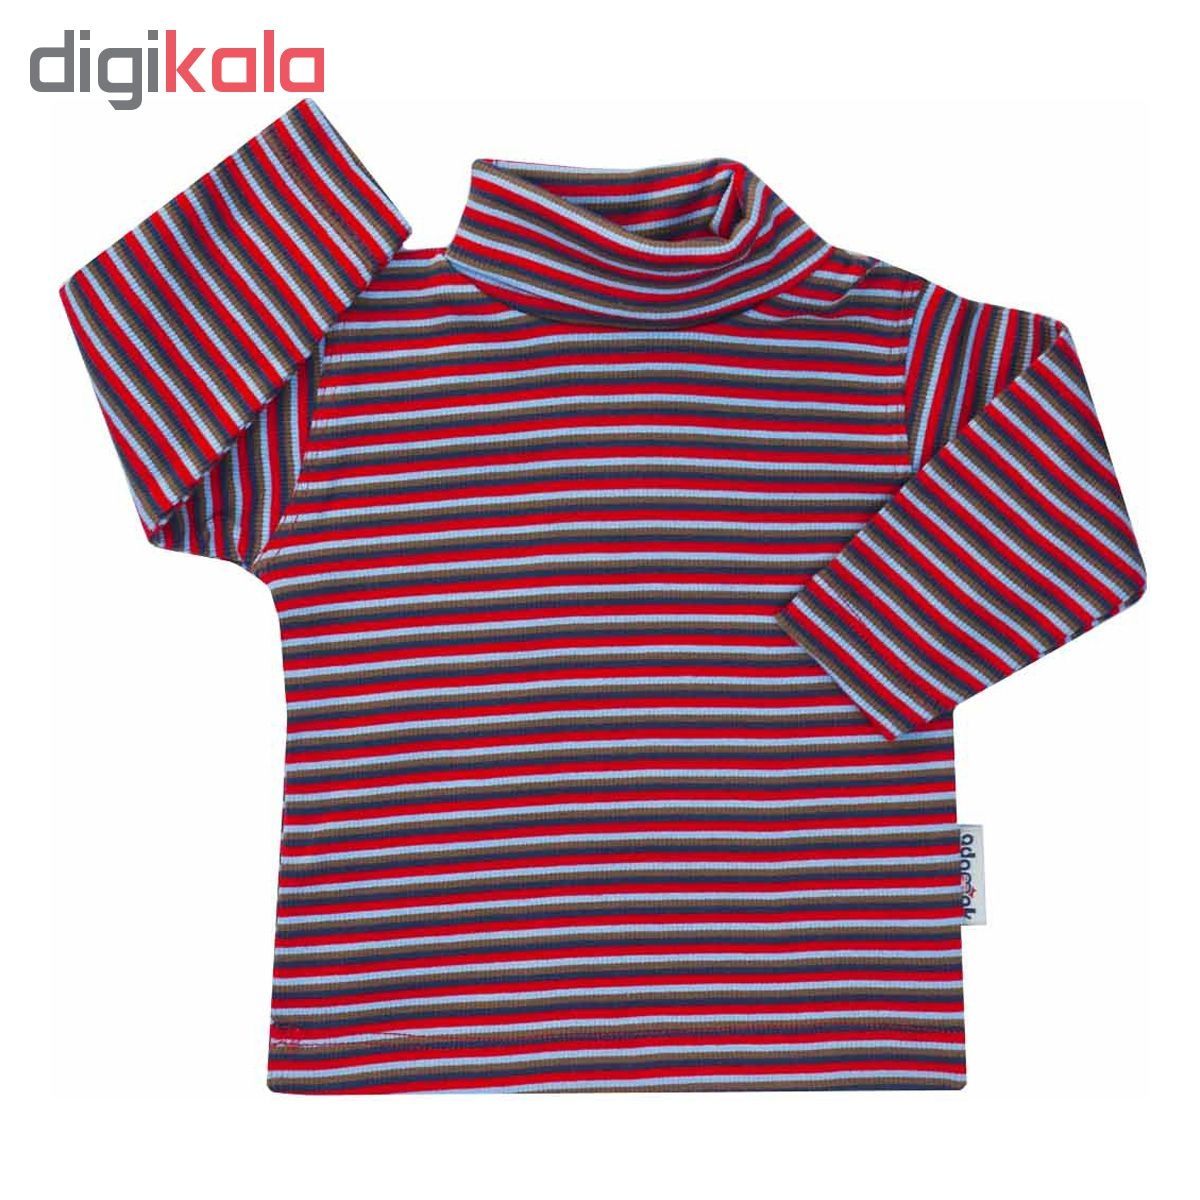 تی شرت آستین بلند نوزاد آدمک طرح راه راه کد 03-144401 -  - 2